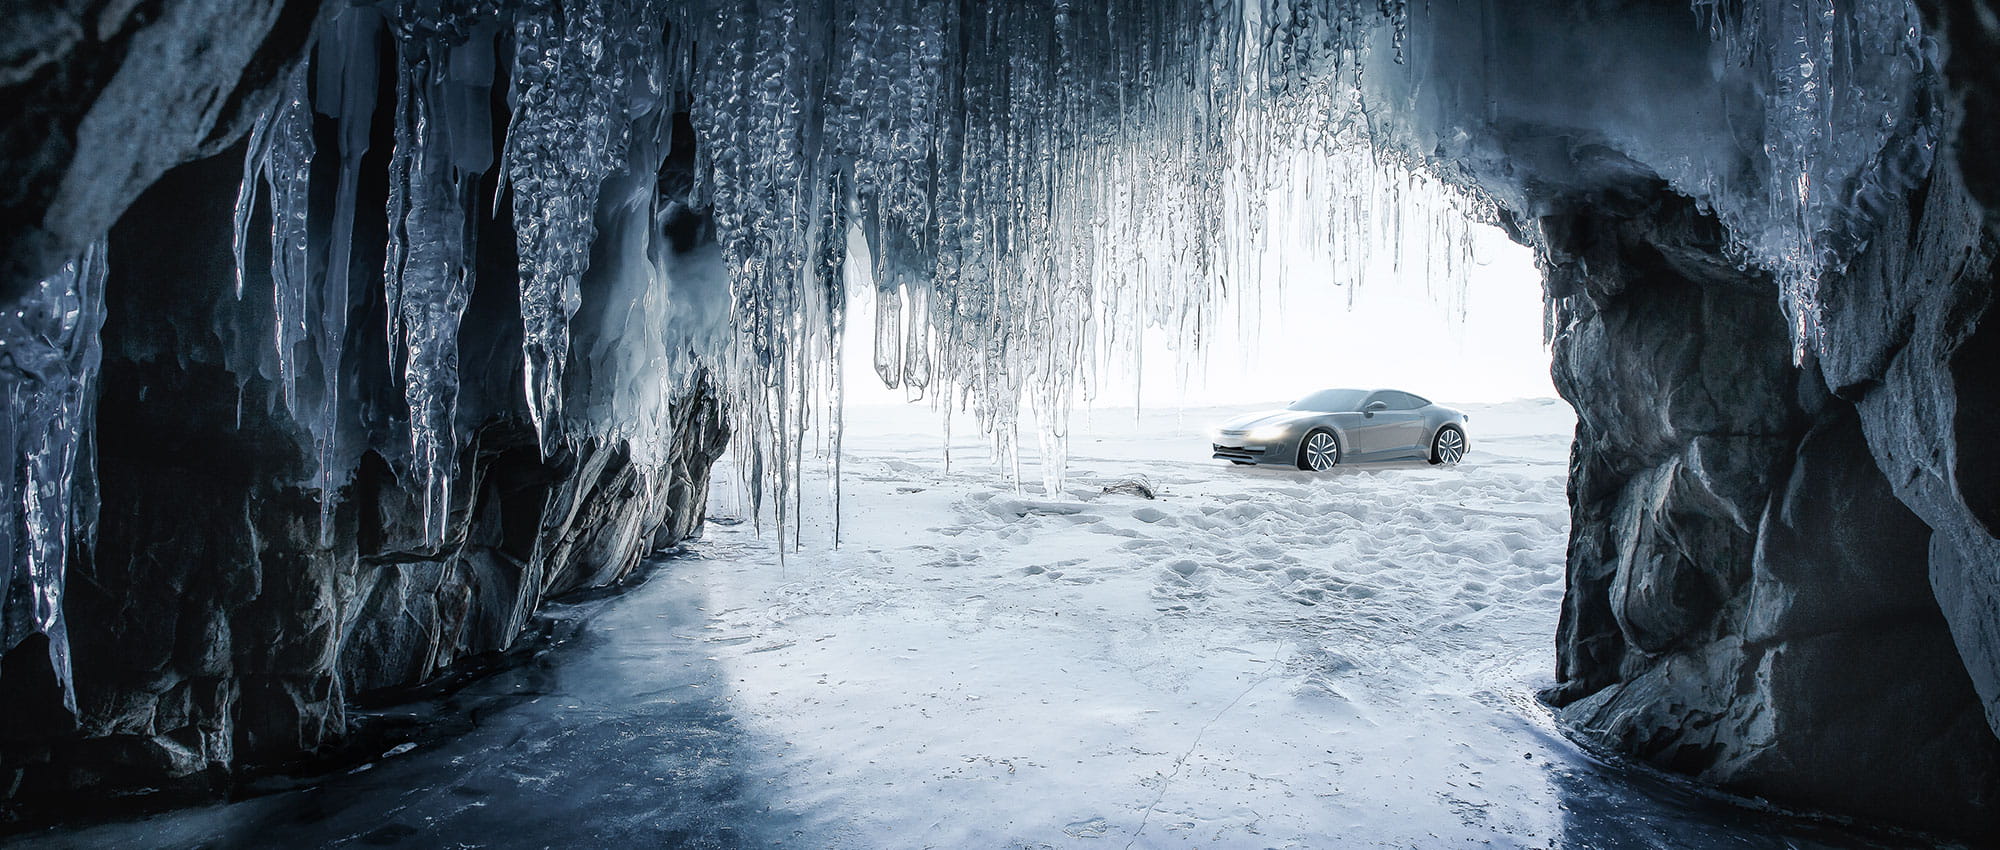 Sicht aus einer Eishöhle und vor der Eishöhle steht ein Auto